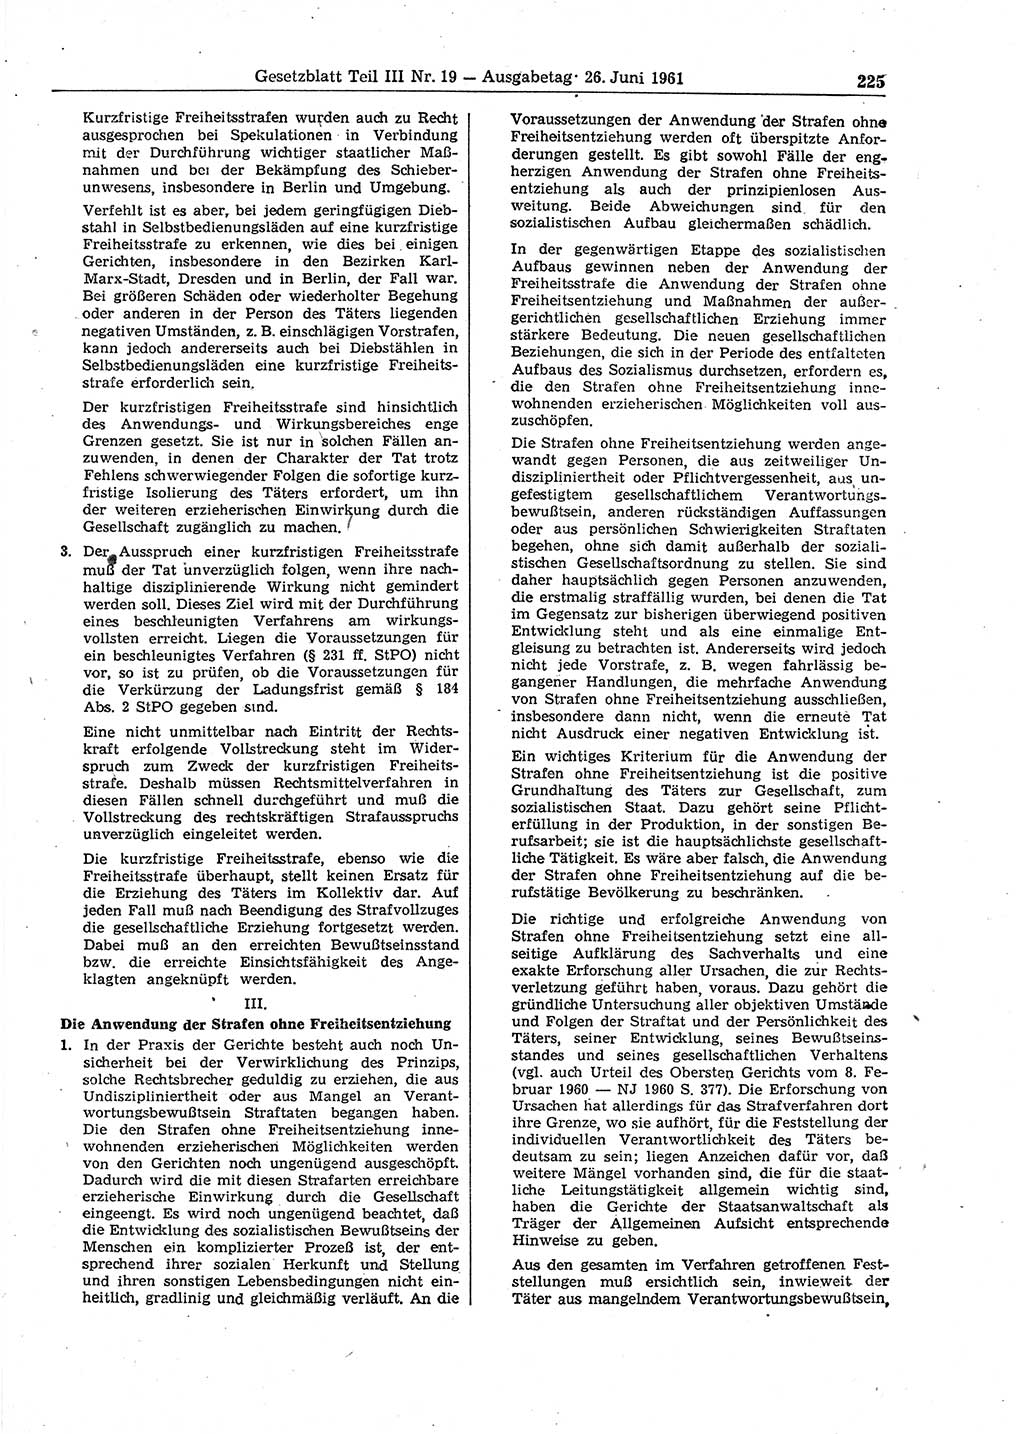 Gesetzblatt (GBl.) der Deutschen Demokratischen Republik (DDR) Teil ⅠⅠⅠ 1961, Seite 225 (GBl. DDR ⅠⅠⅠ 1961, S. 225)